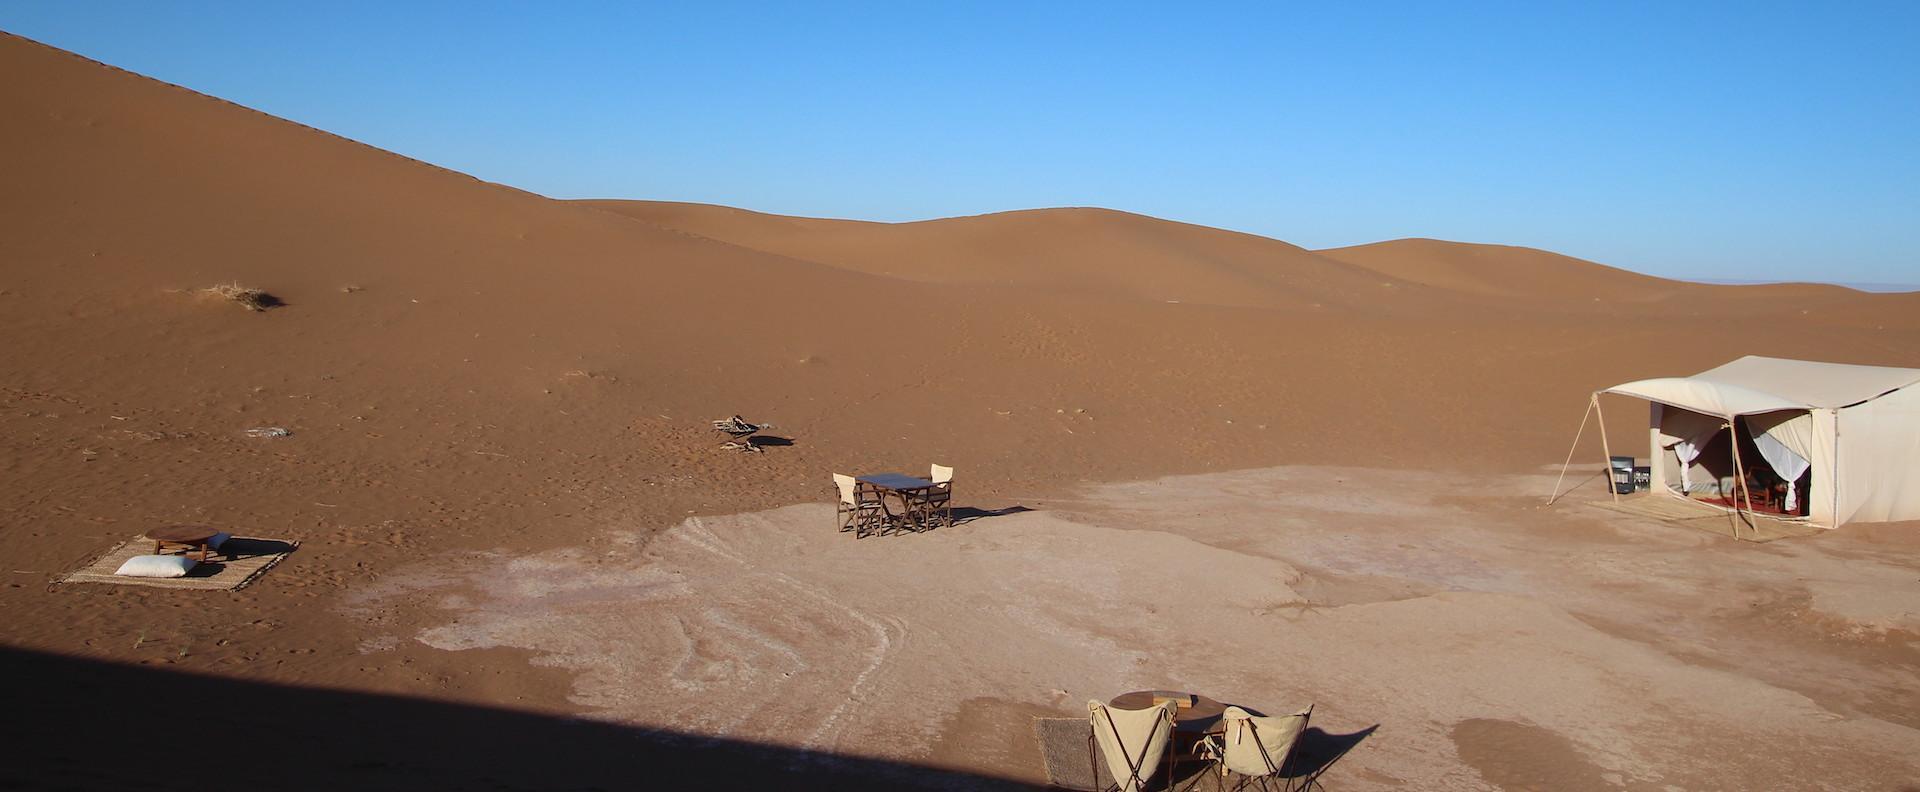 azalai desert camp morning